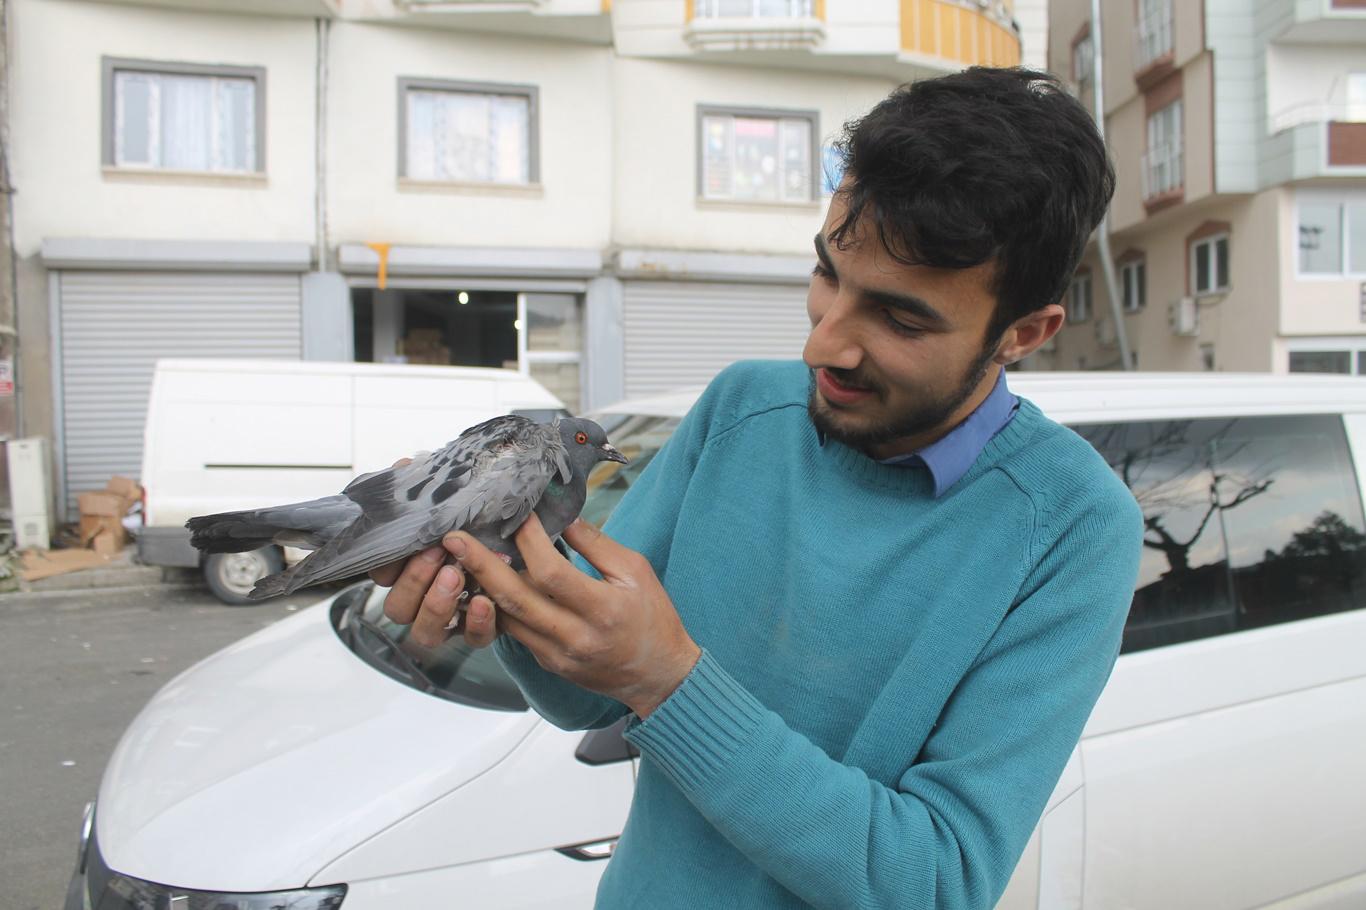 Duyarlı vatandaş aracın motoruna giren yaralı güvercini tedavi ettirdi